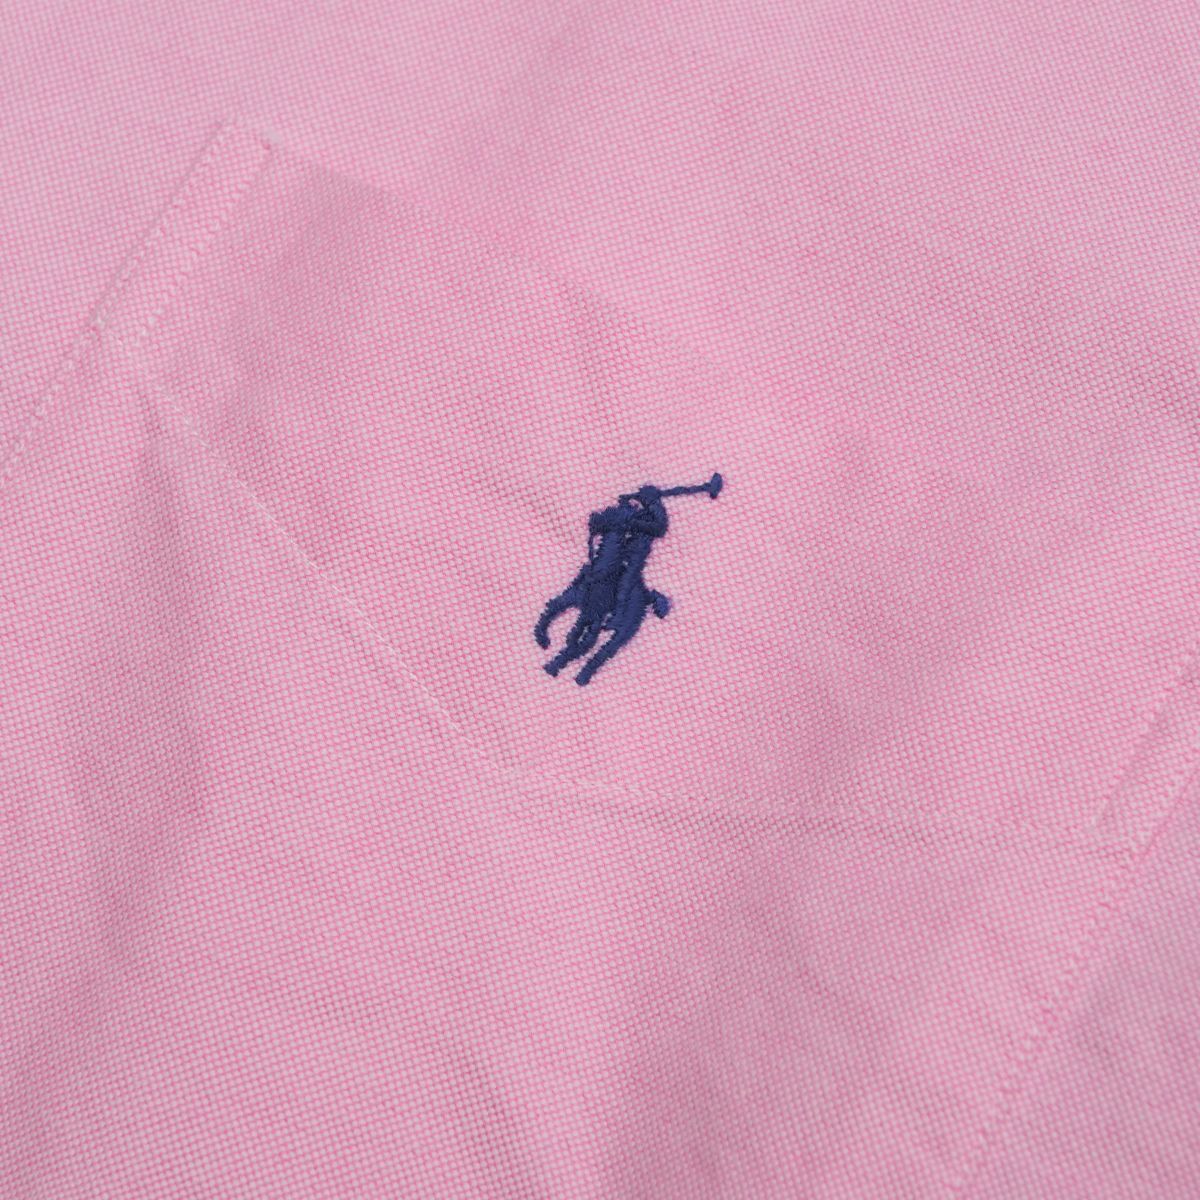 GO4366 Ralph Lauren 2 шт. комплект / оскфорд рубашка / короткий рукав / мужской S/ хлопок / розовый серия + оттенок голубого / кнопка down рубашка 